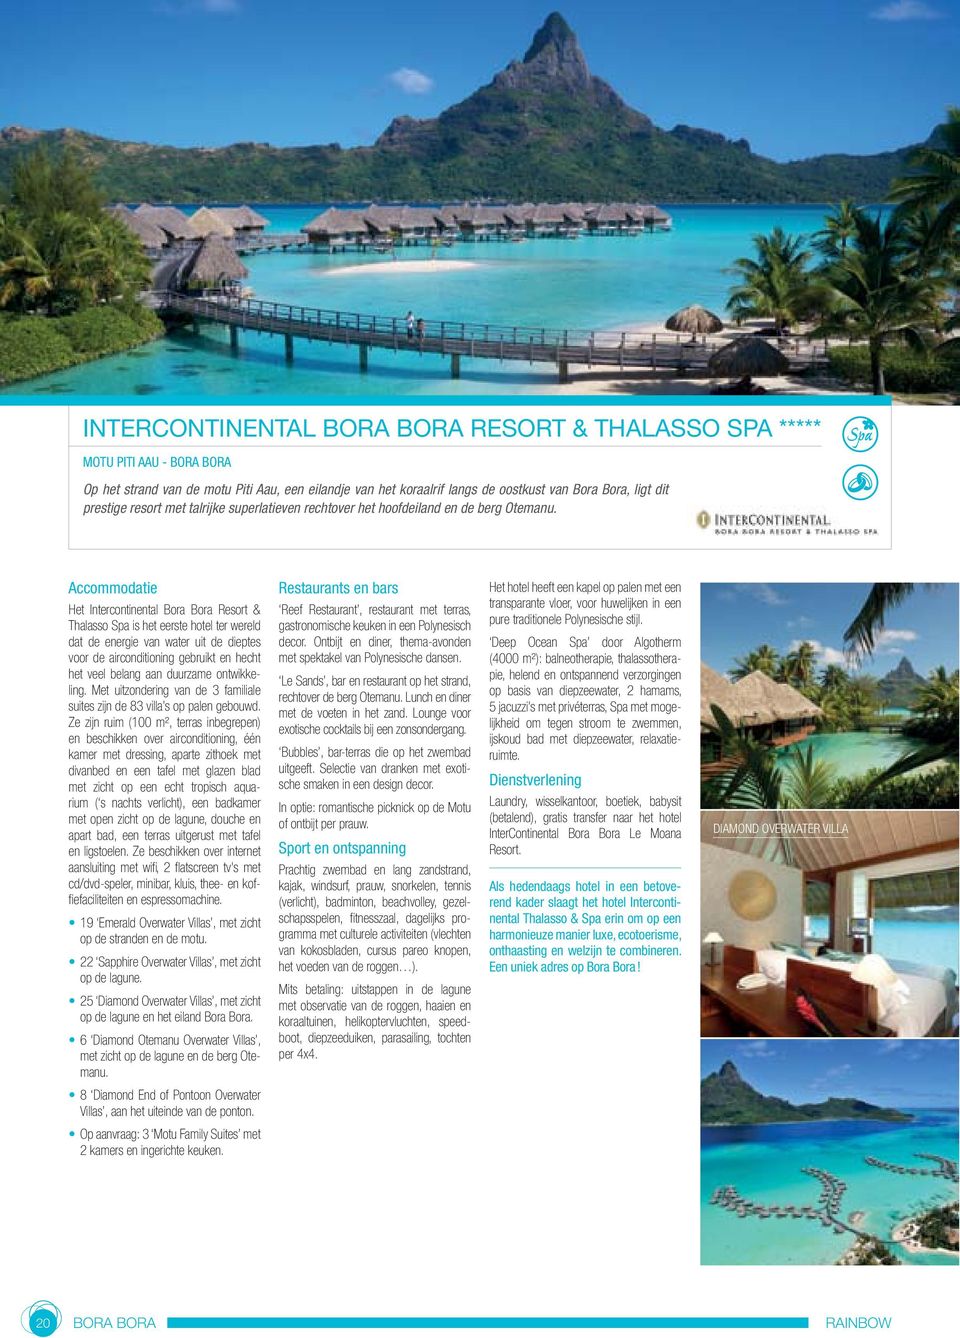 Het Intercontinental Bora Bora Resort & Thalasso Spa is het eerste hotel ter wereld dat de energie van water uit de dieptes voor de airconditioning gebruikt en hecht het veel belang aan duurzame